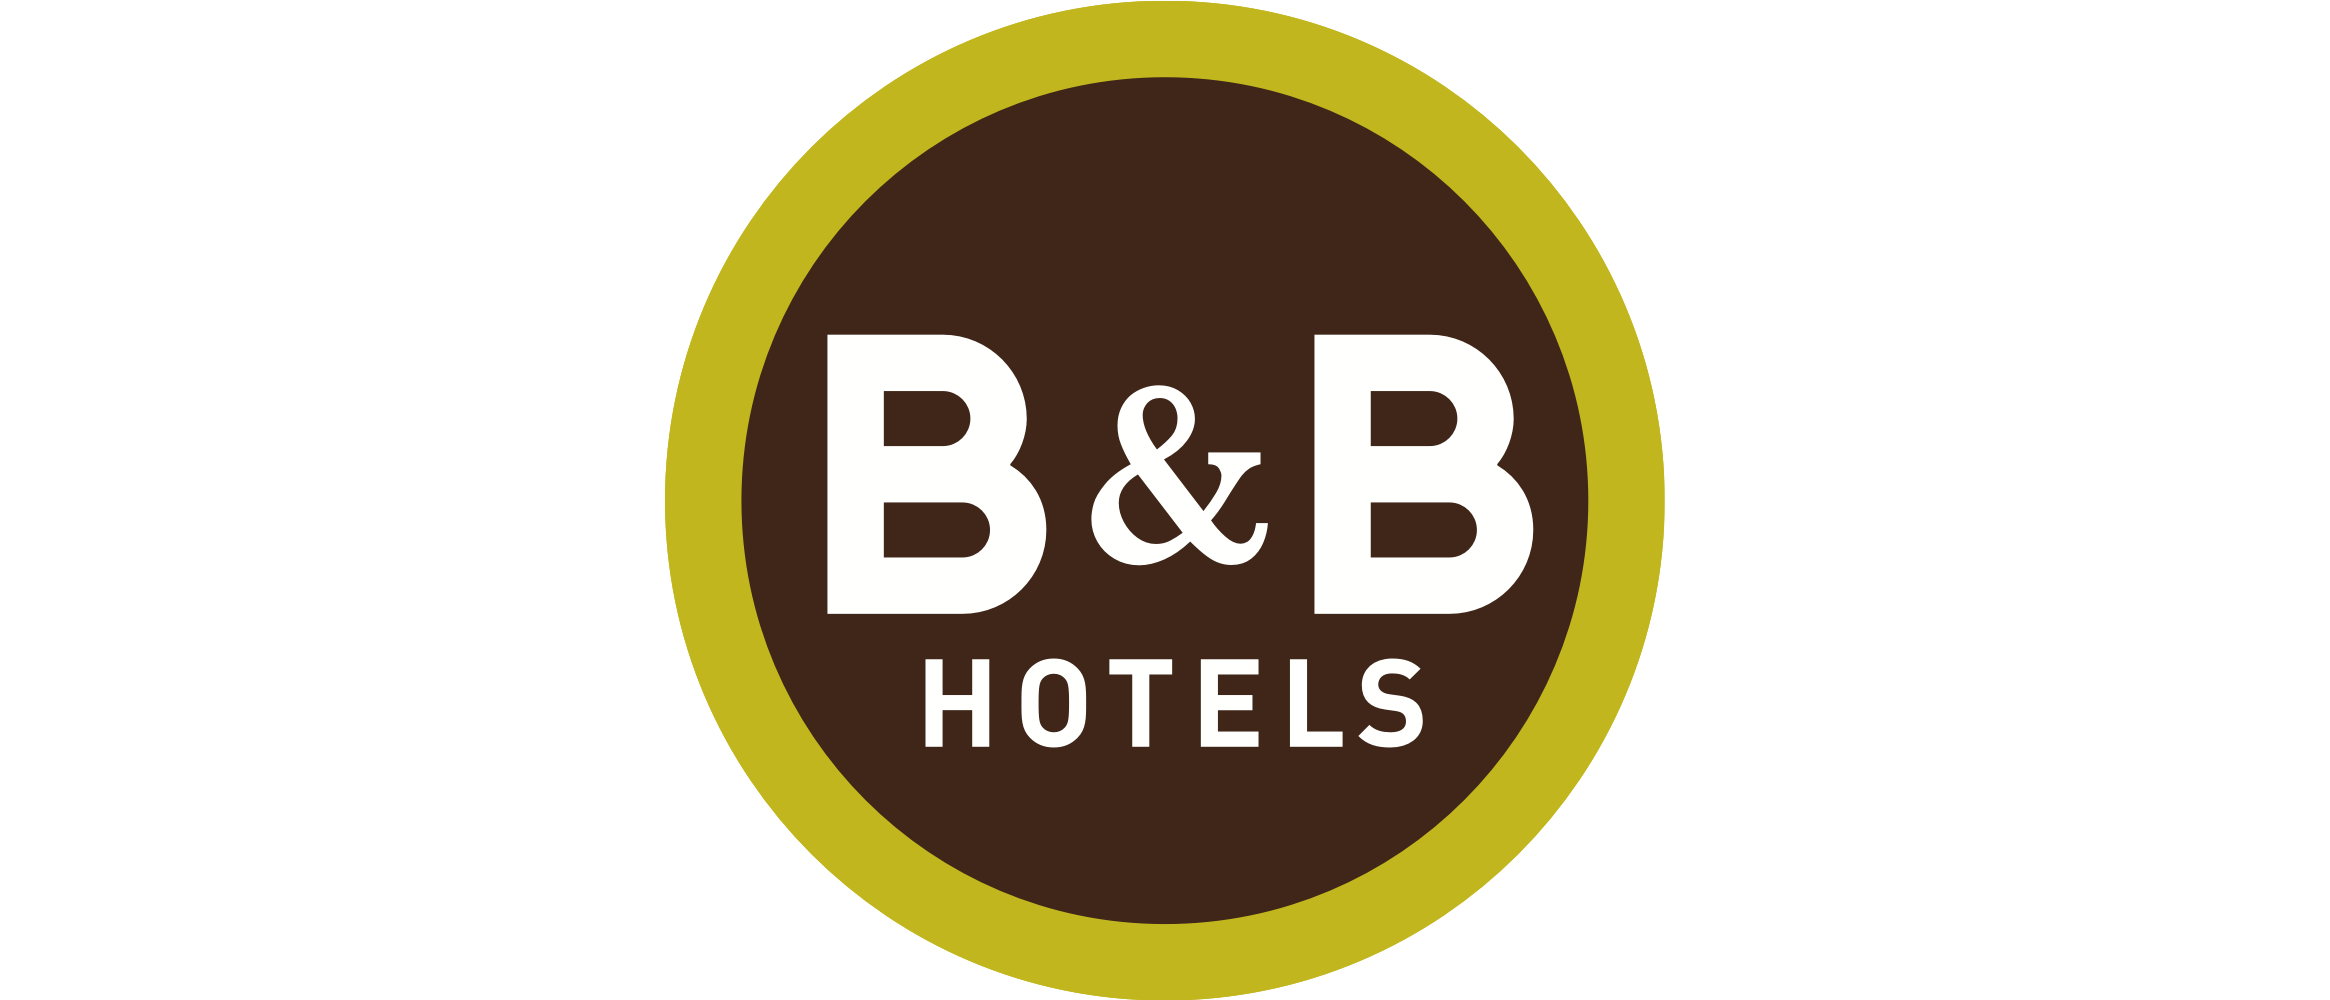 B&B Hotels PT